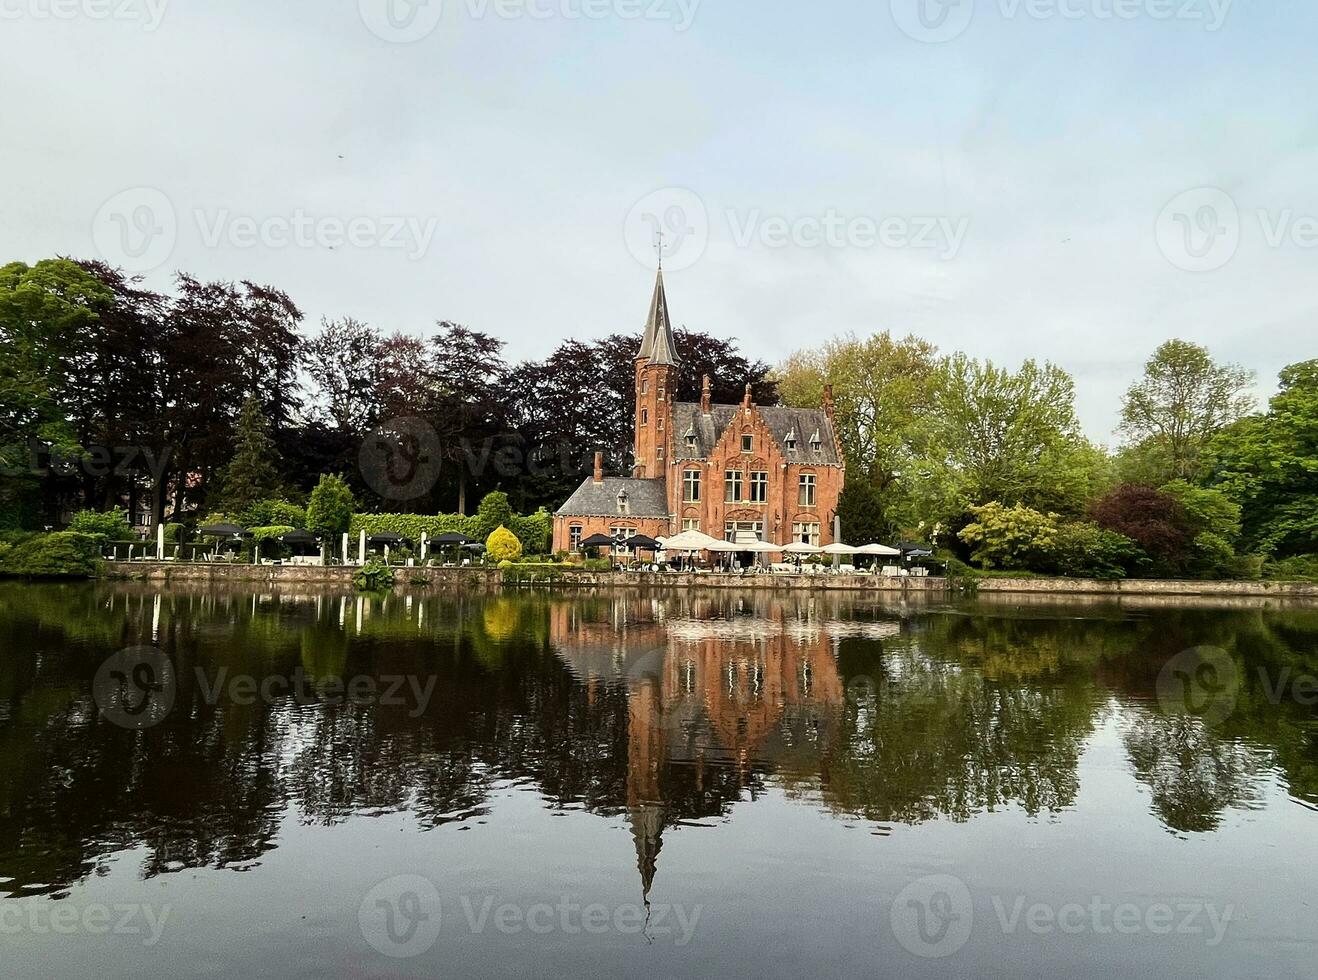 mijnwater oude middeleeuws gotisch rood steen kasteel Bij de meer van liefde in Brugge in openbaar park zone, belgië, helder zonnig dag, mooi natuurlijk landschap, gebouw reflectie in water foto